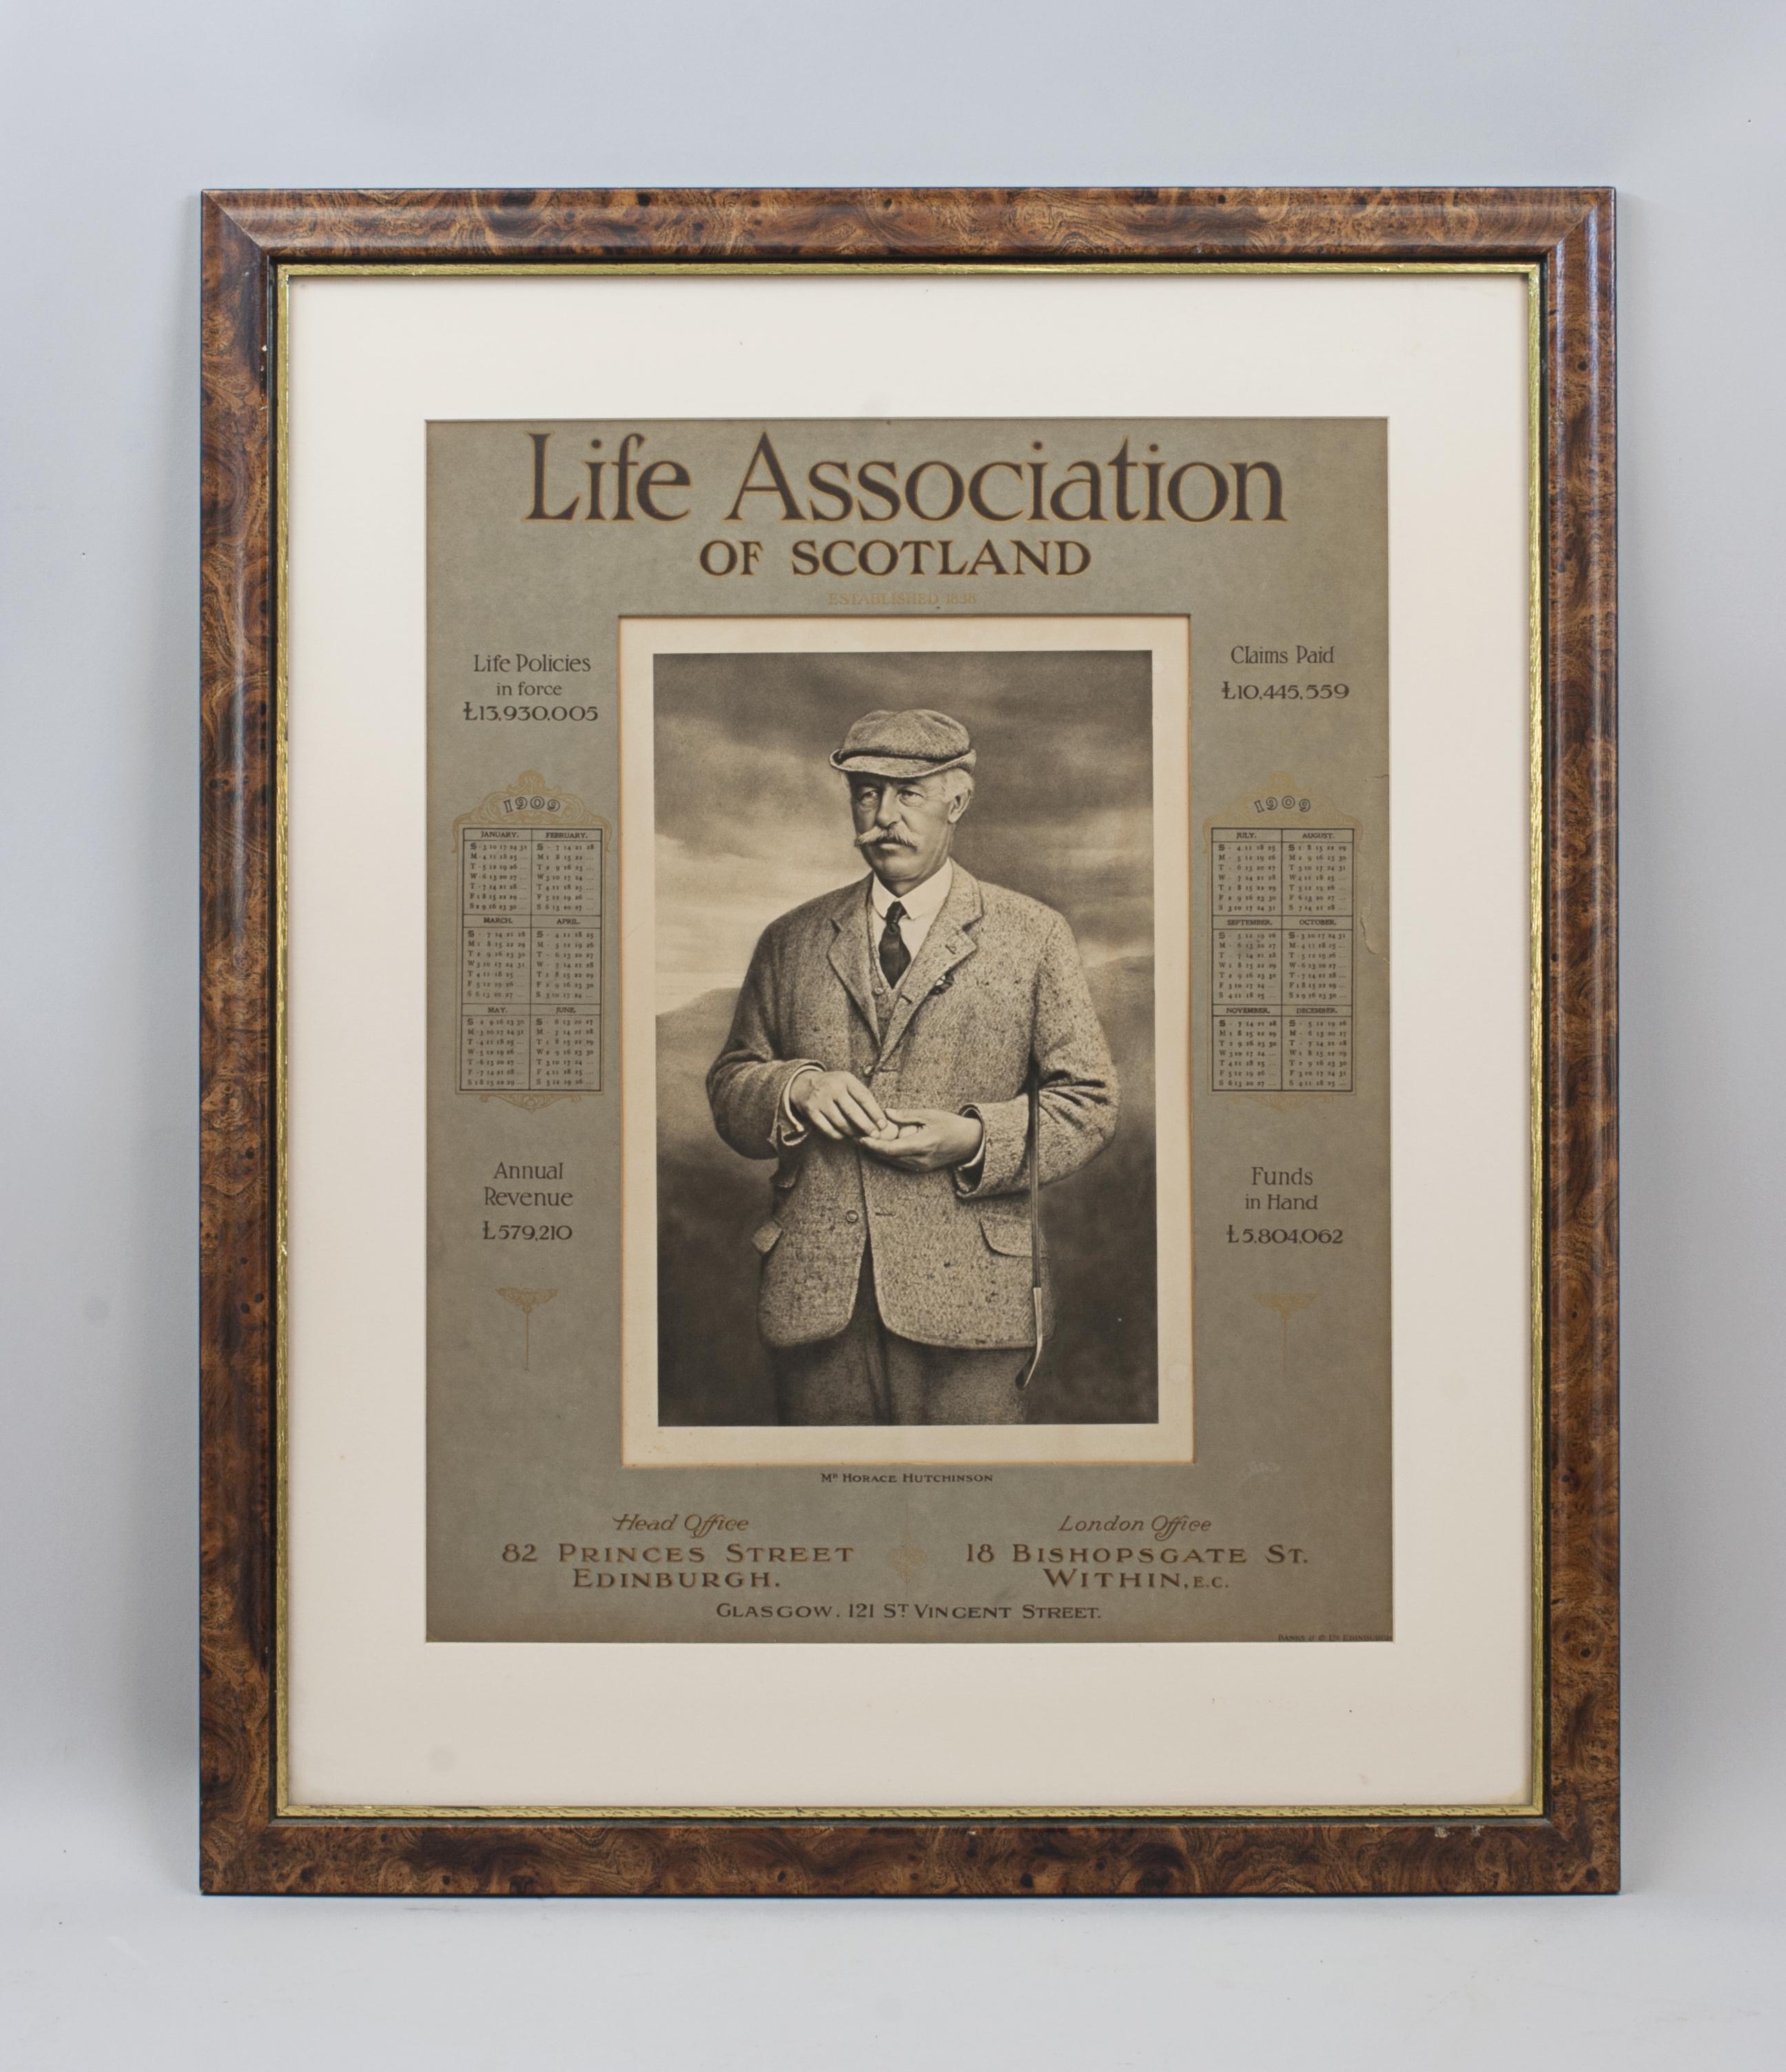 Antique Life Association Golf Print, Herr Horace Hutchinson.
Ein Original-Kalender der Life Association of Scotland aus dem Jahr 1909. Der Kalender ist gerahmt und zeigt in der Mitte ein wunderschönes Bild des englischen Amateurgolfers Horace